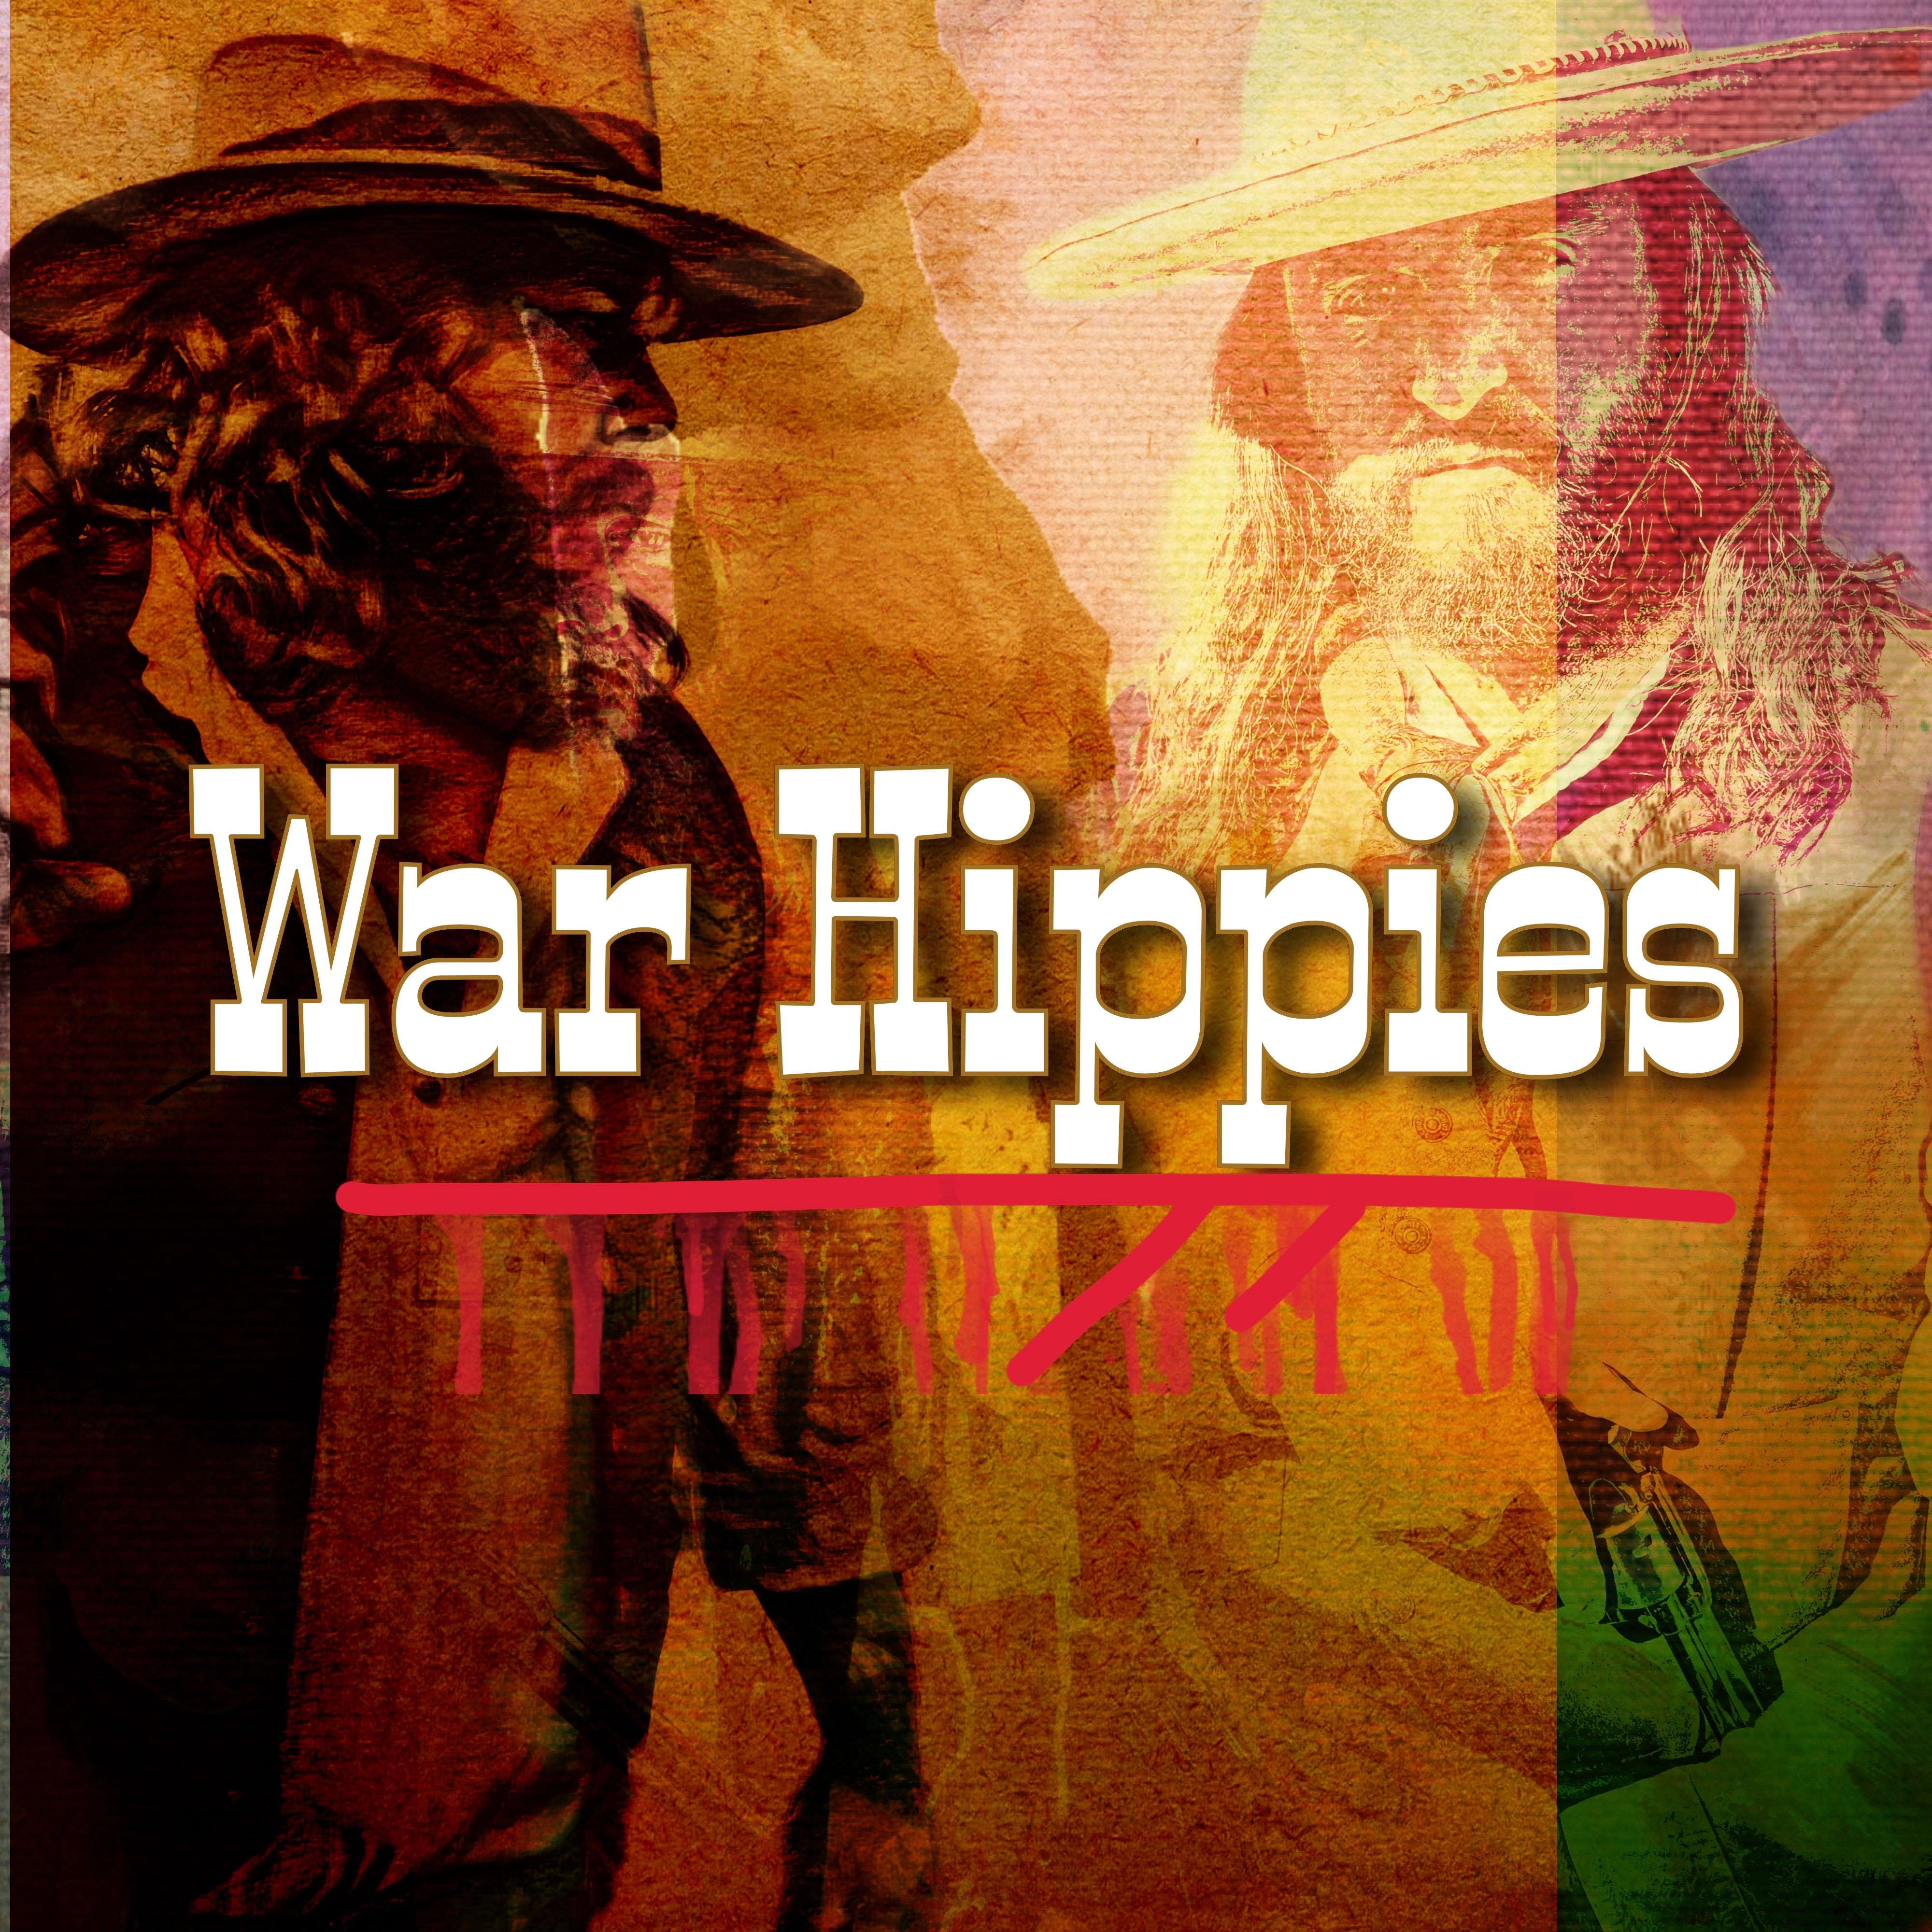 War Hippies, Scooter Brown & Donnie Reis